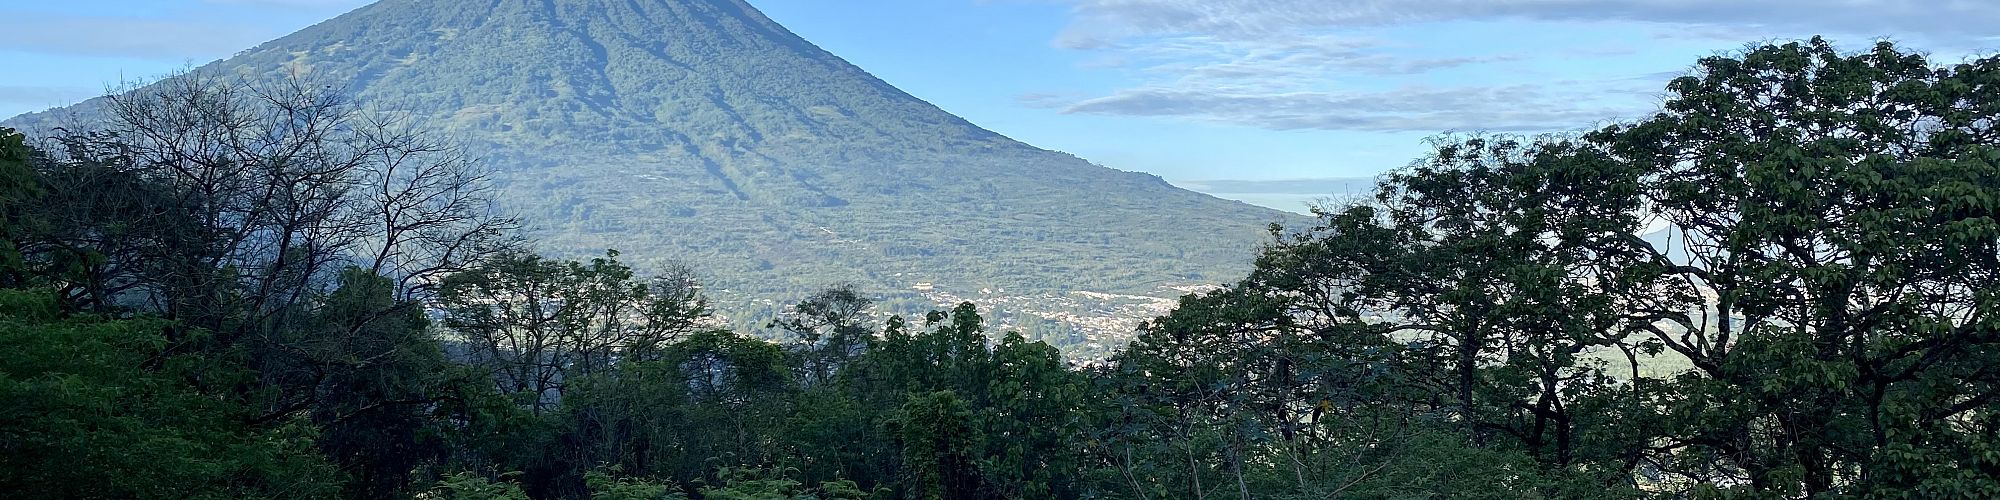 Guatemala Blog: Presence